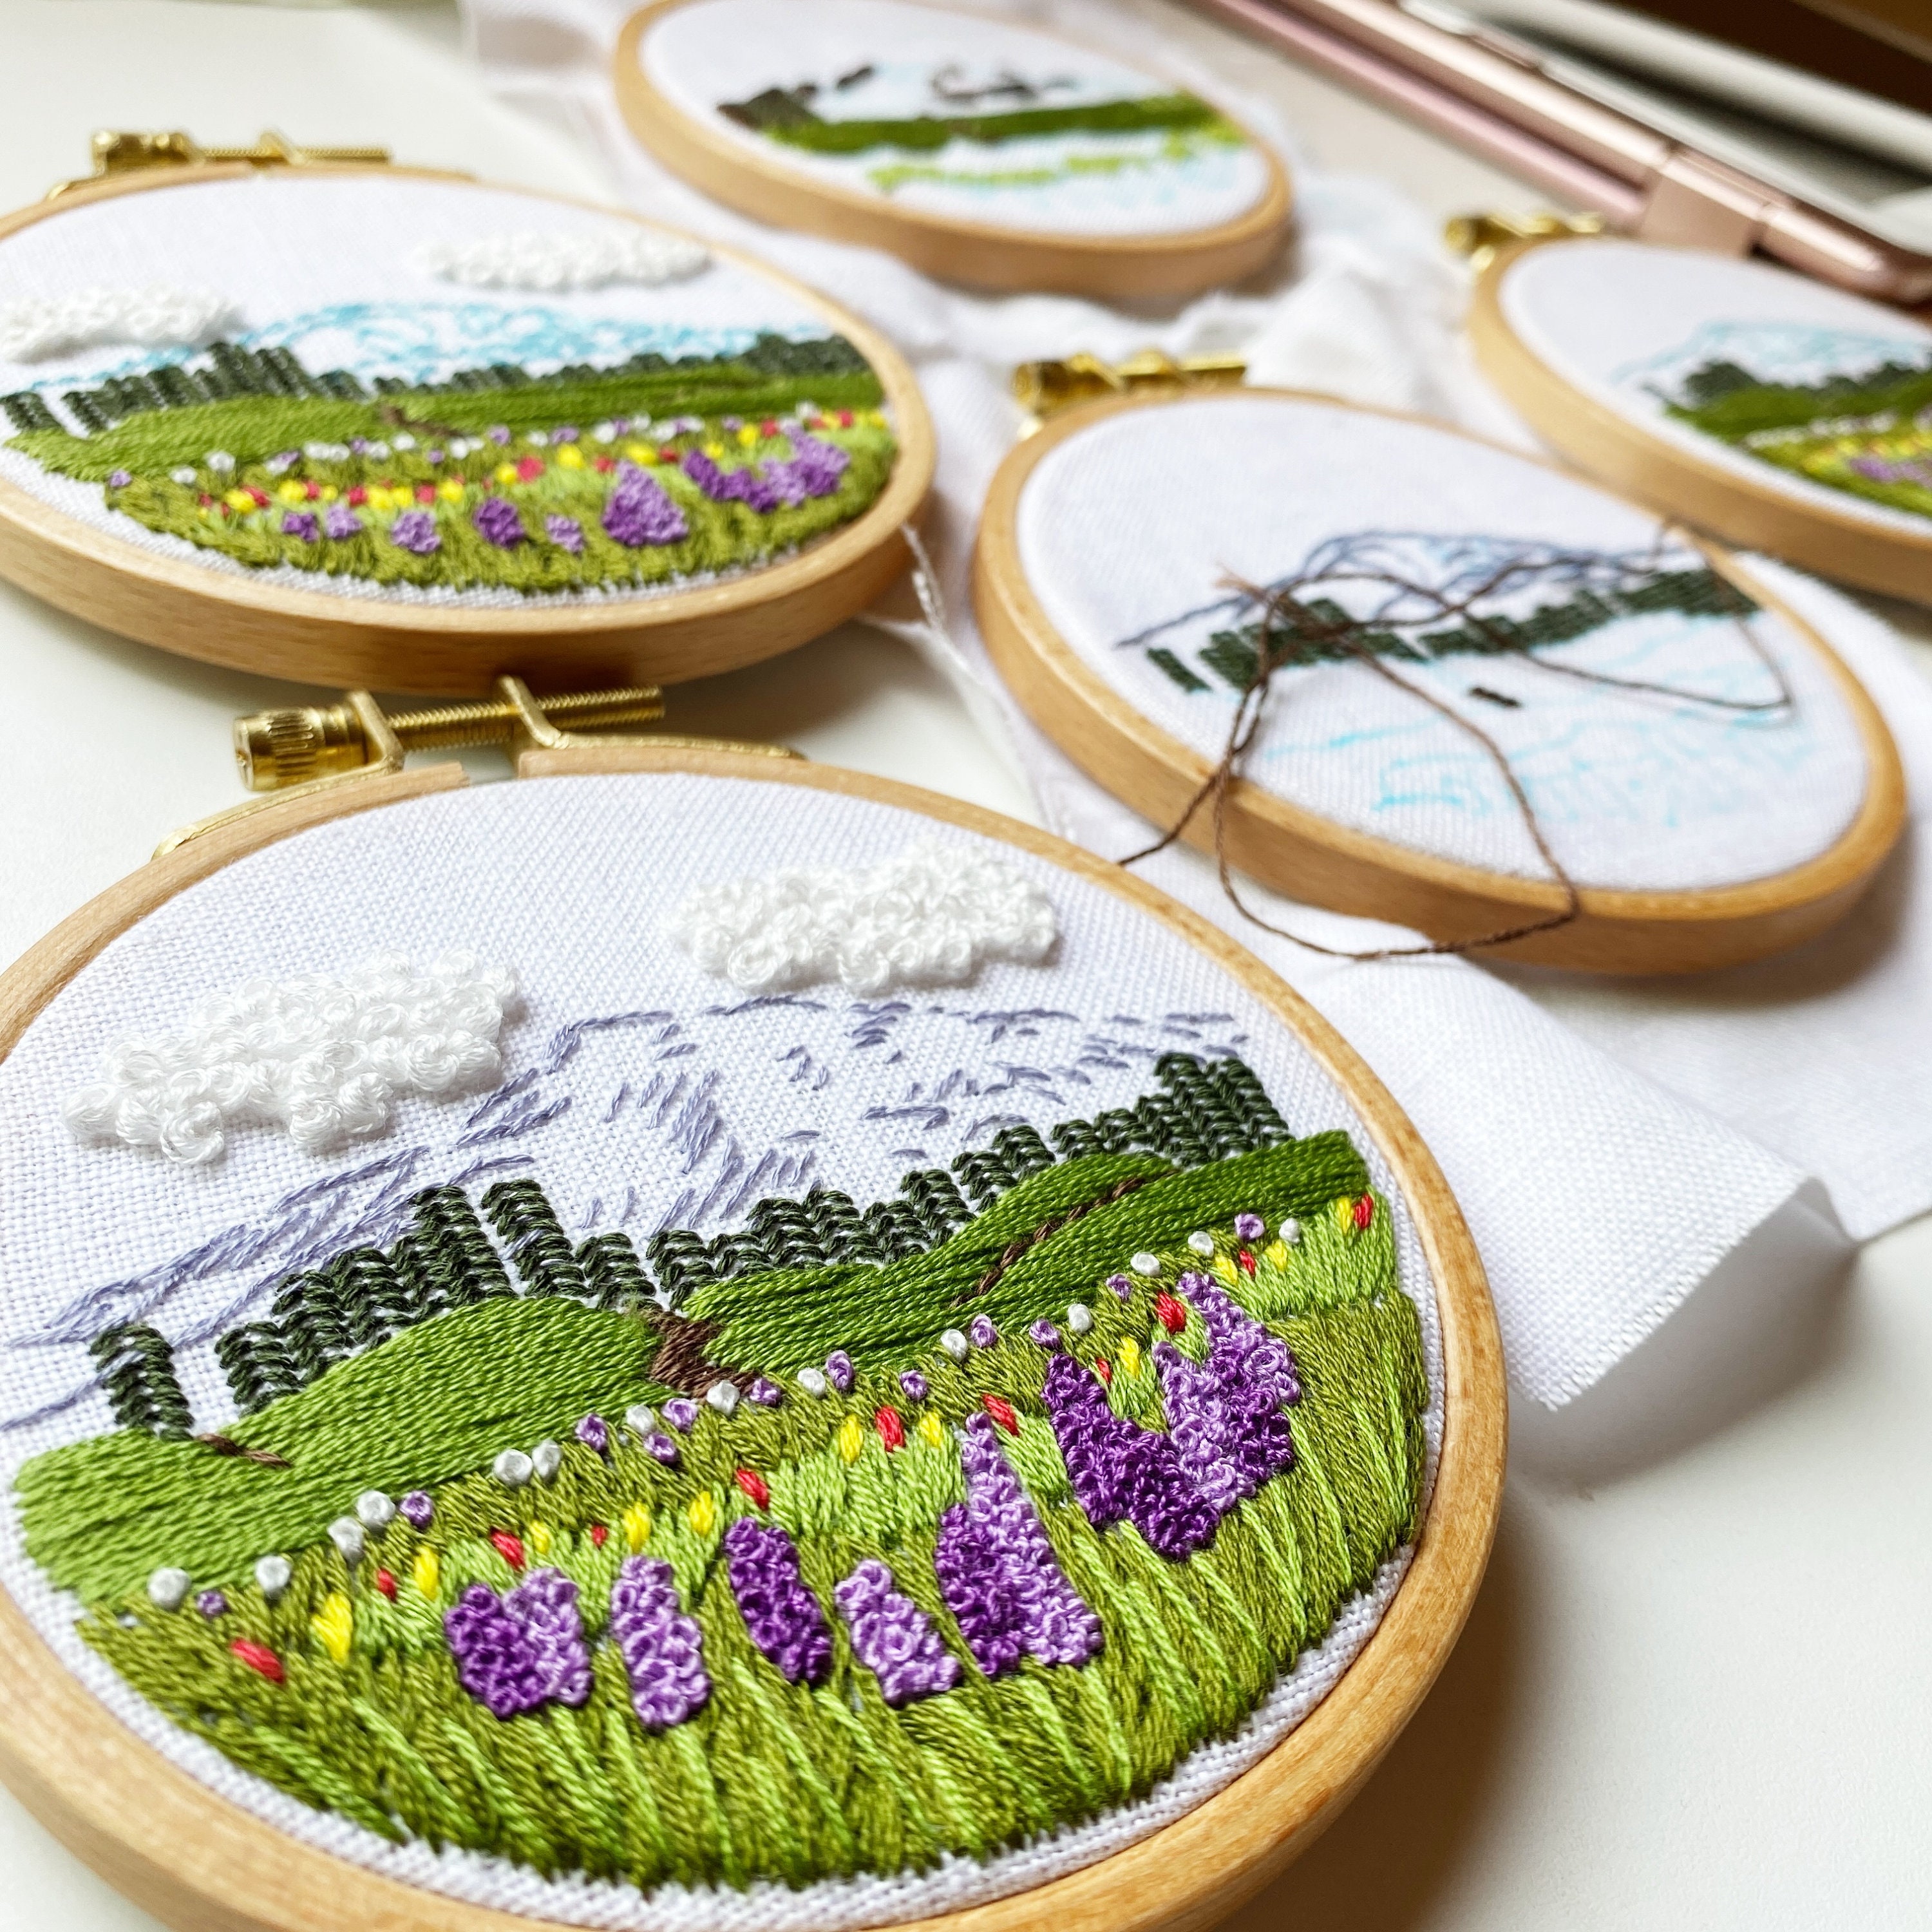  ARAZADR Full Range of Embroidery Starter Kits for Home